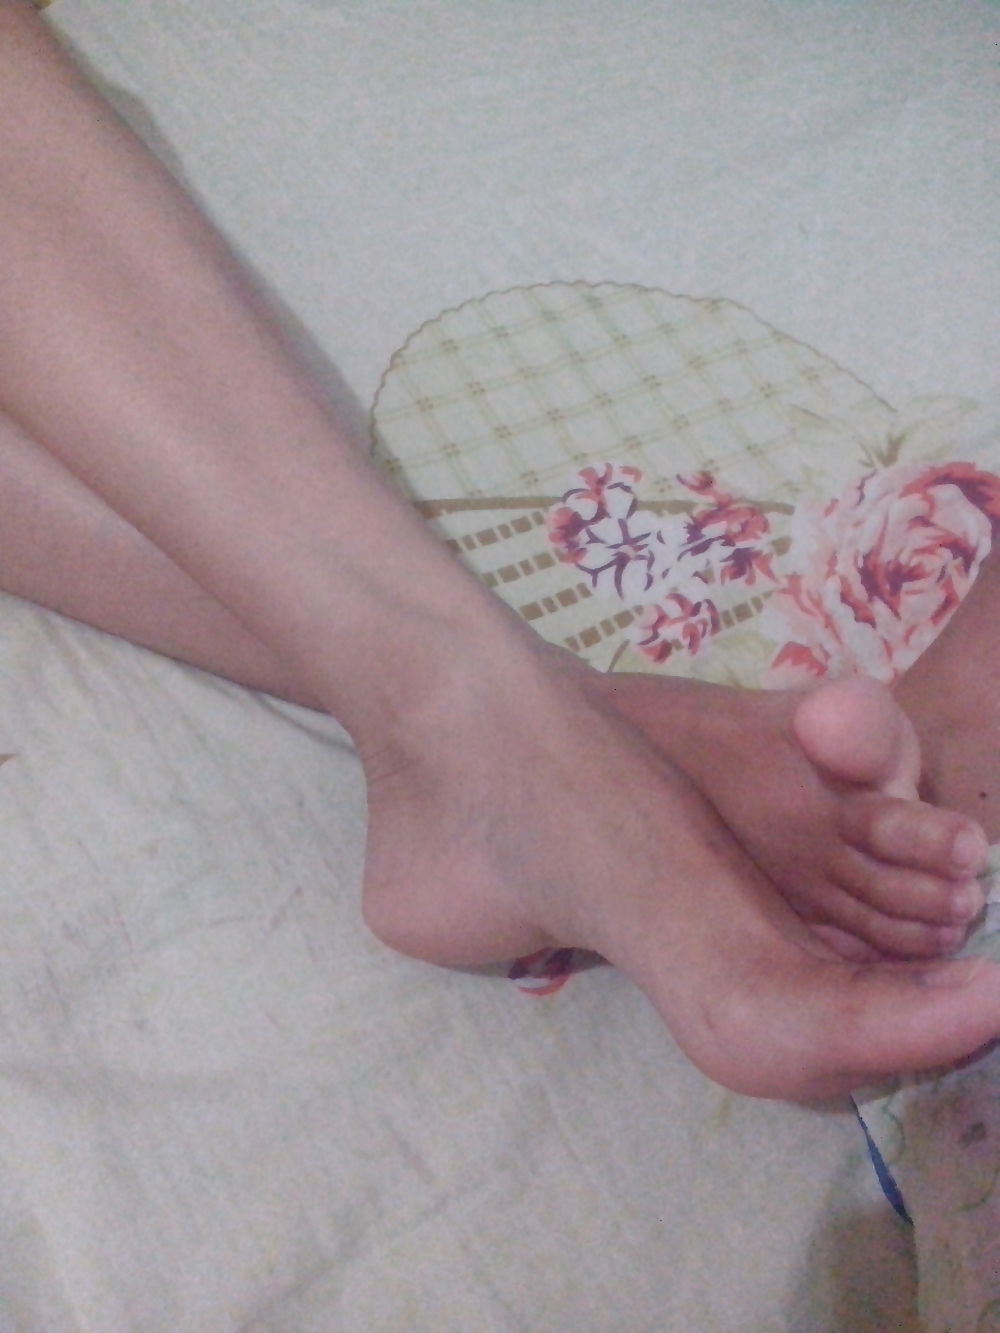 My Filipino GF's Feet #20222253